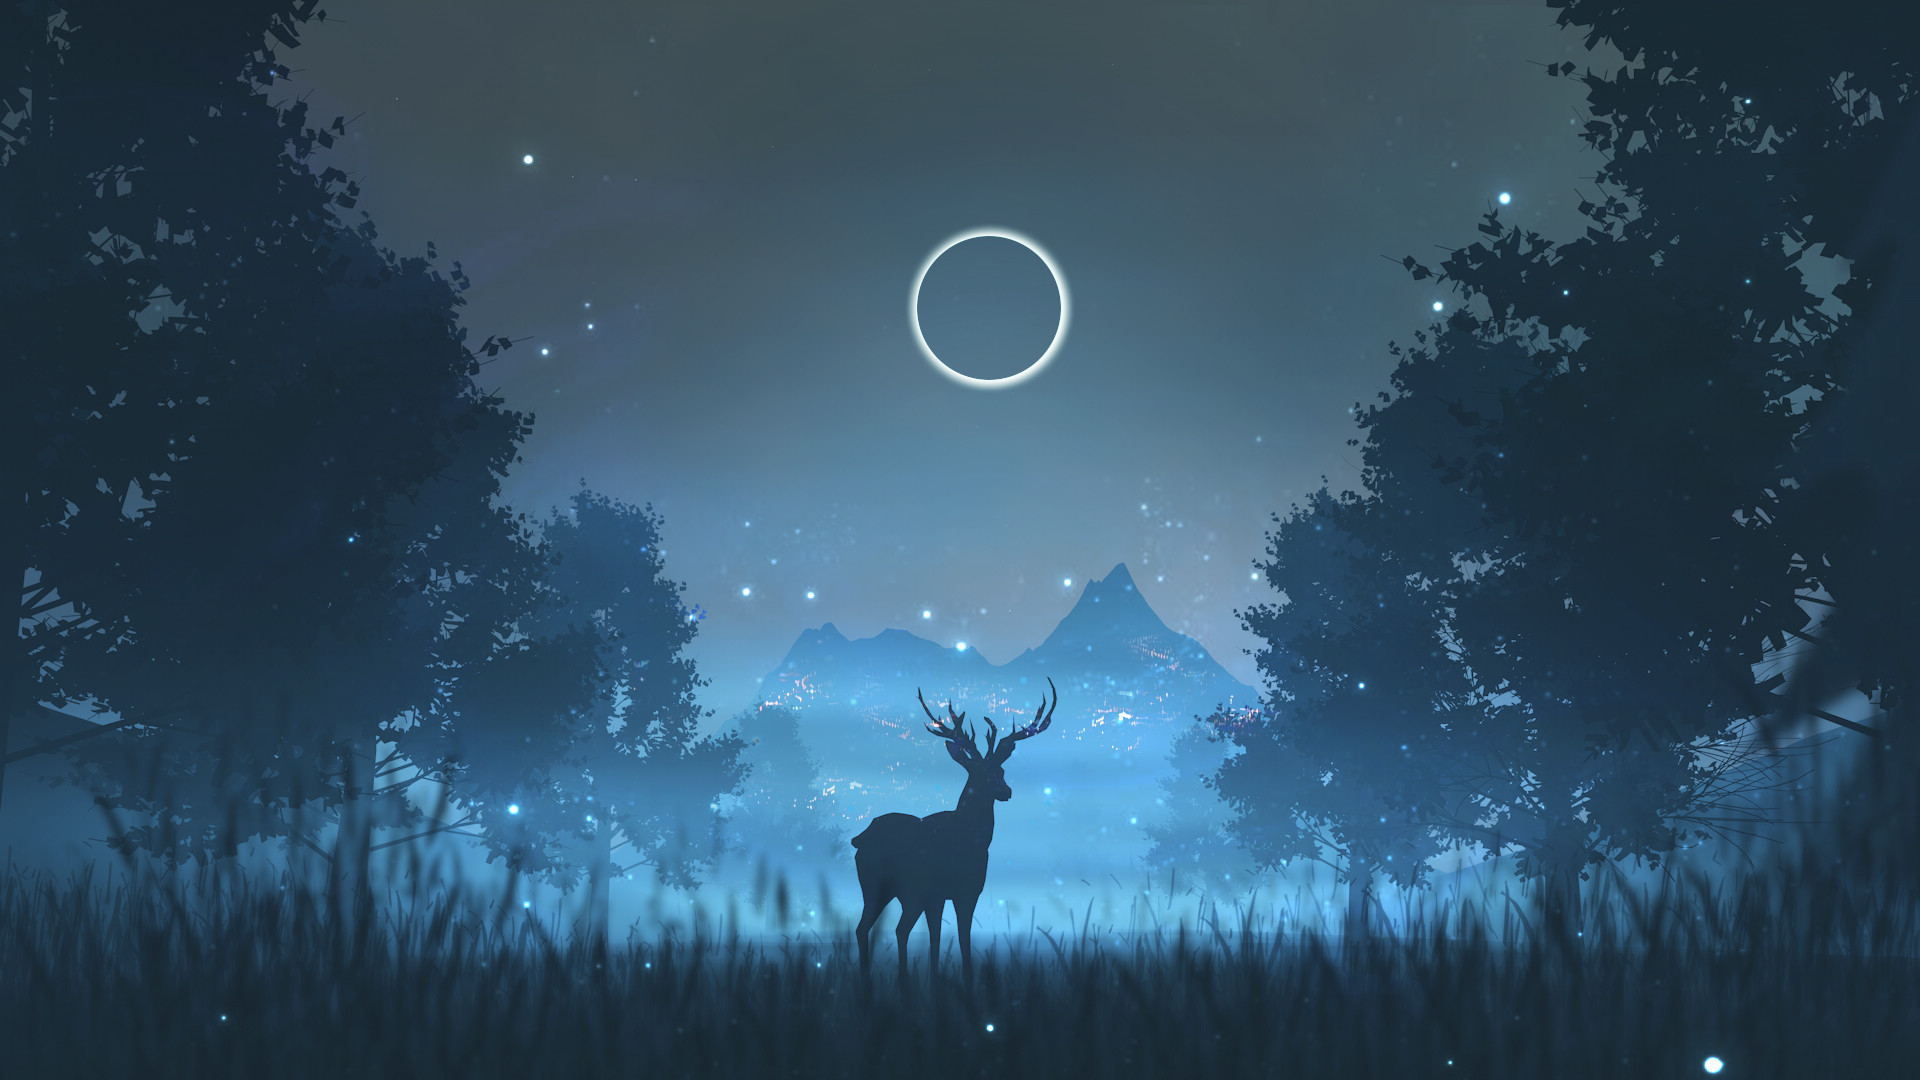 静寂夜晚圆月之下森林鹿唯美意境壁纸